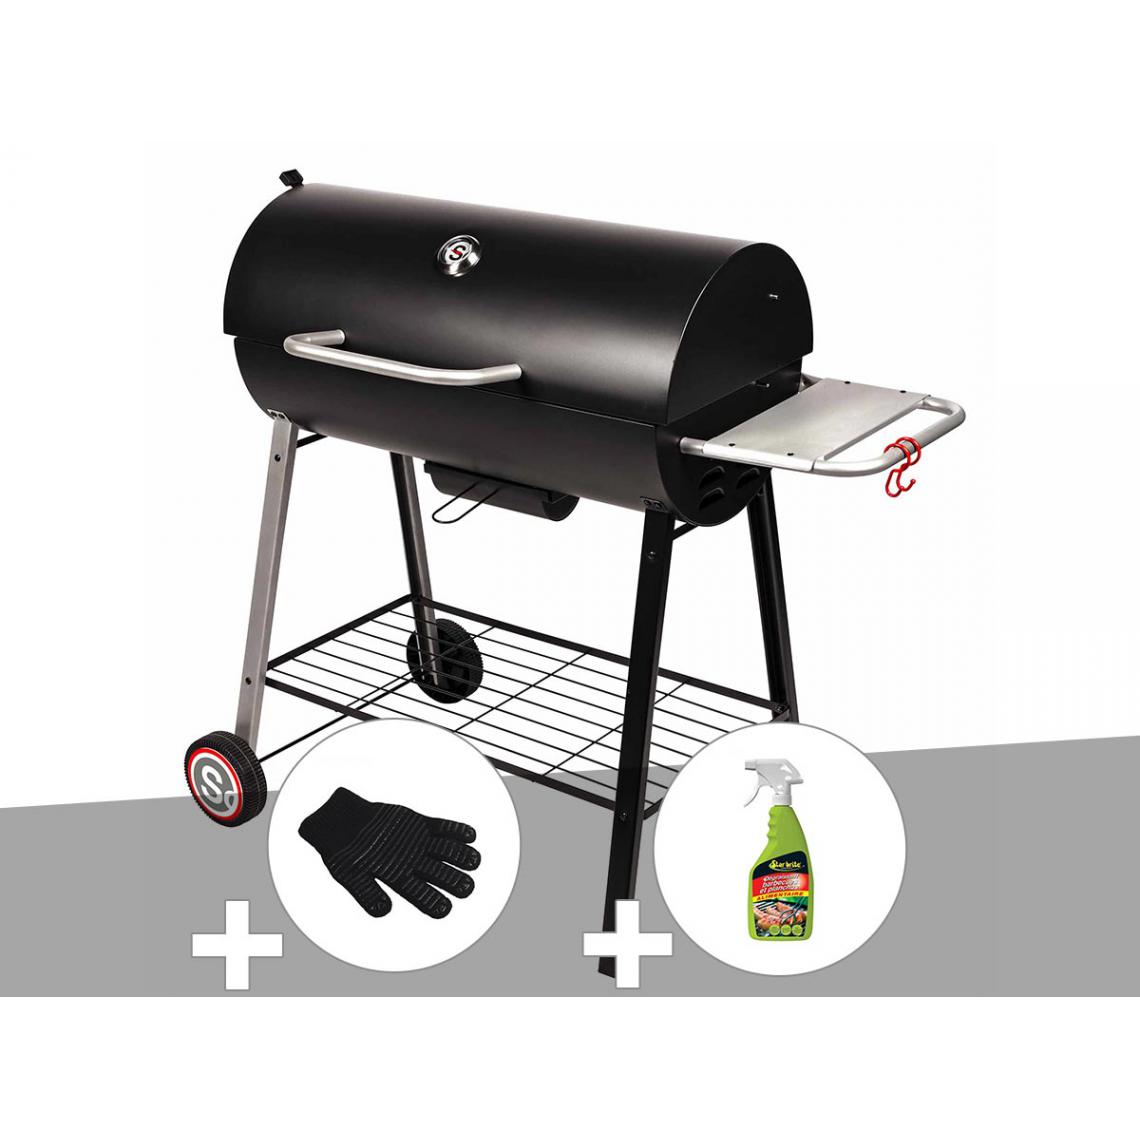 Somagic - Barbecue à charbon sur chariot Michigan - Somagic + Gant de protection + Dégraissant pour barbecue - Barbecues charbon de bois